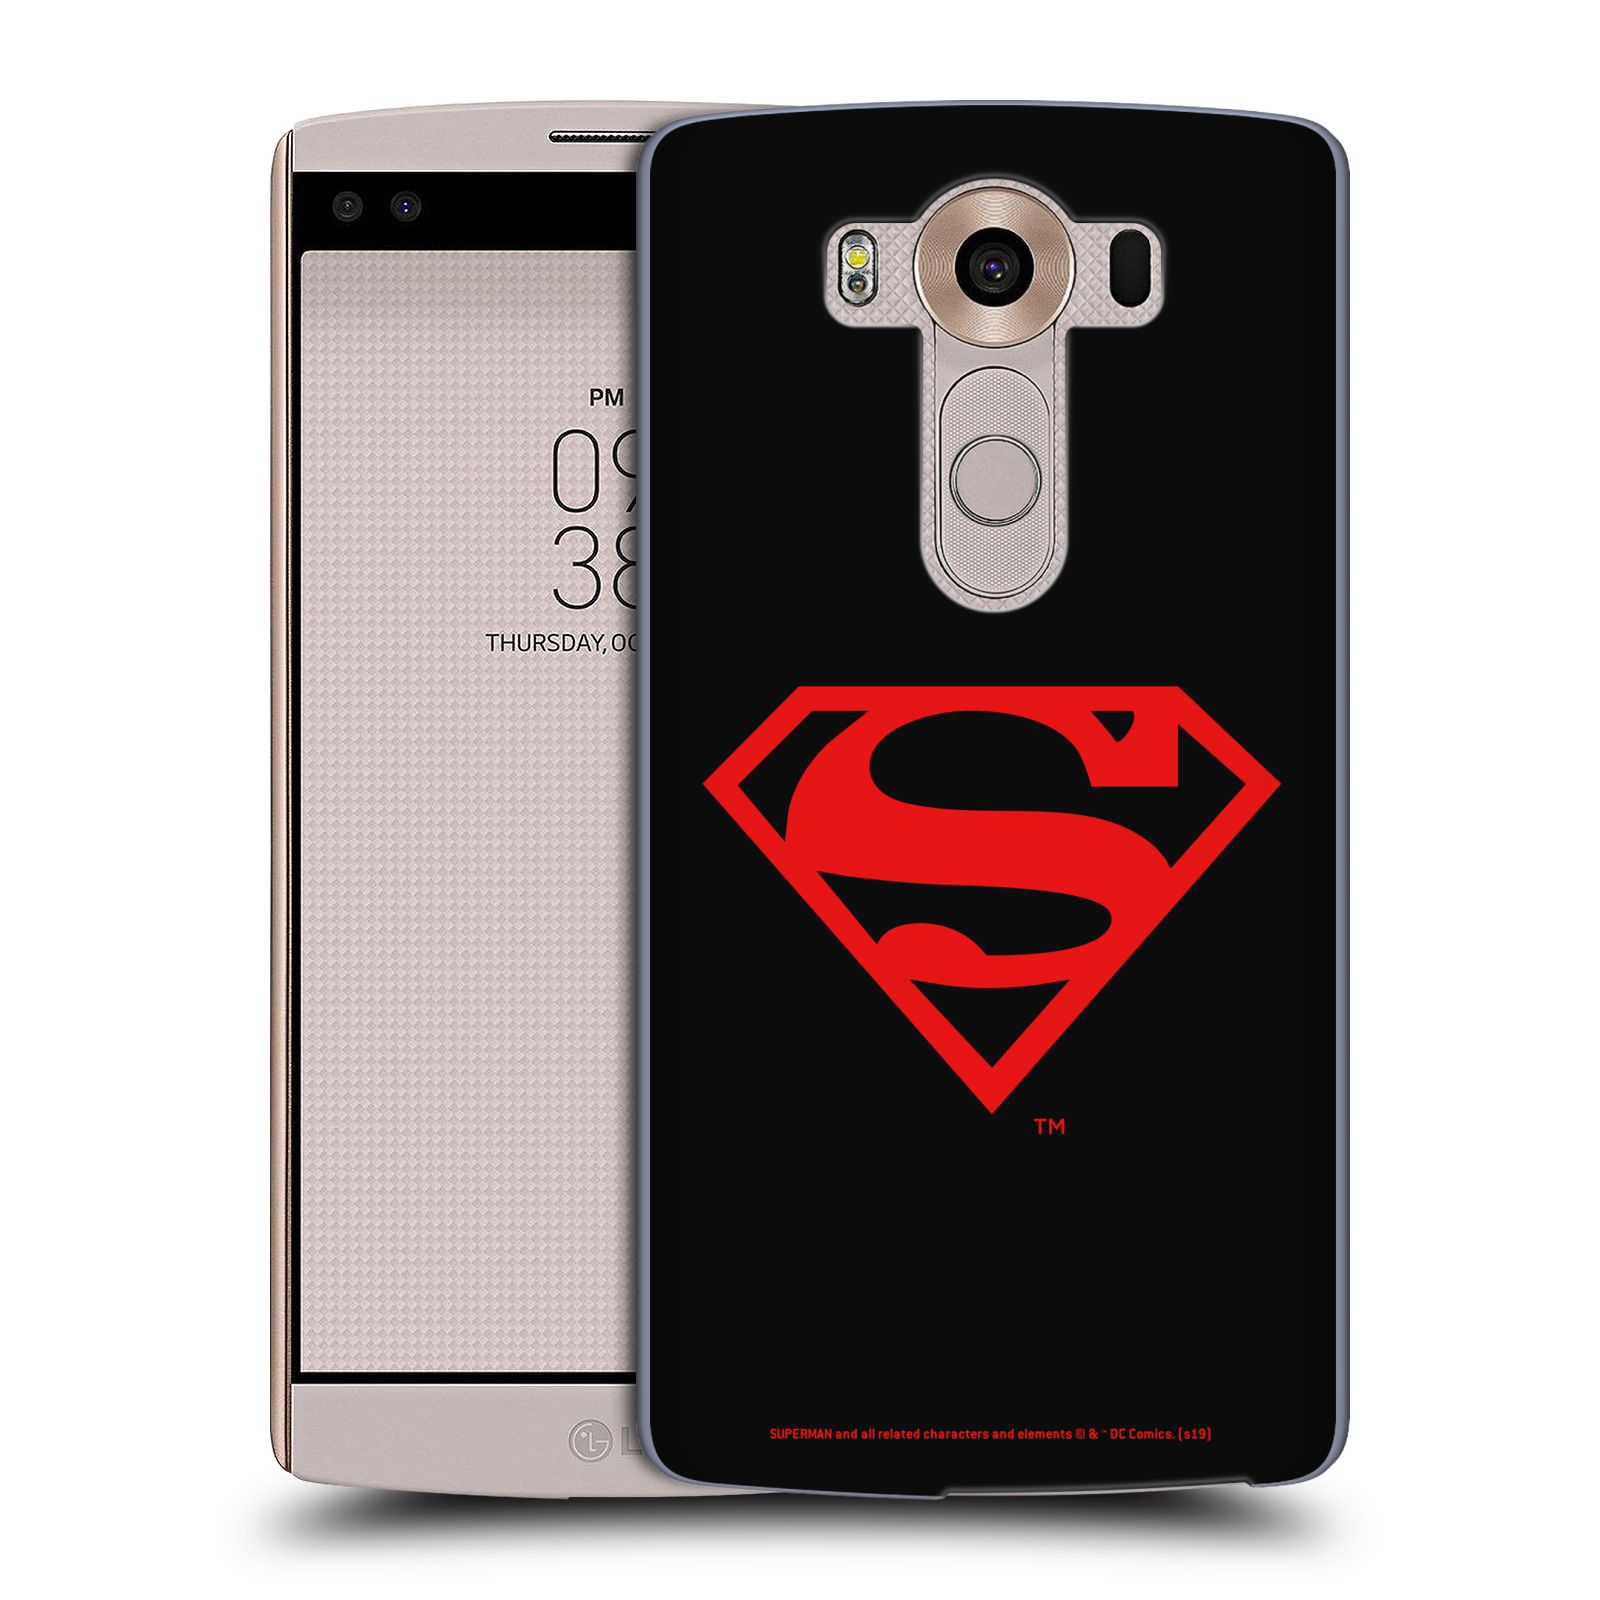 Pouzdro na mobil LG V10 - HEAD CASE - DC komix Superman červený znak černé pozadí